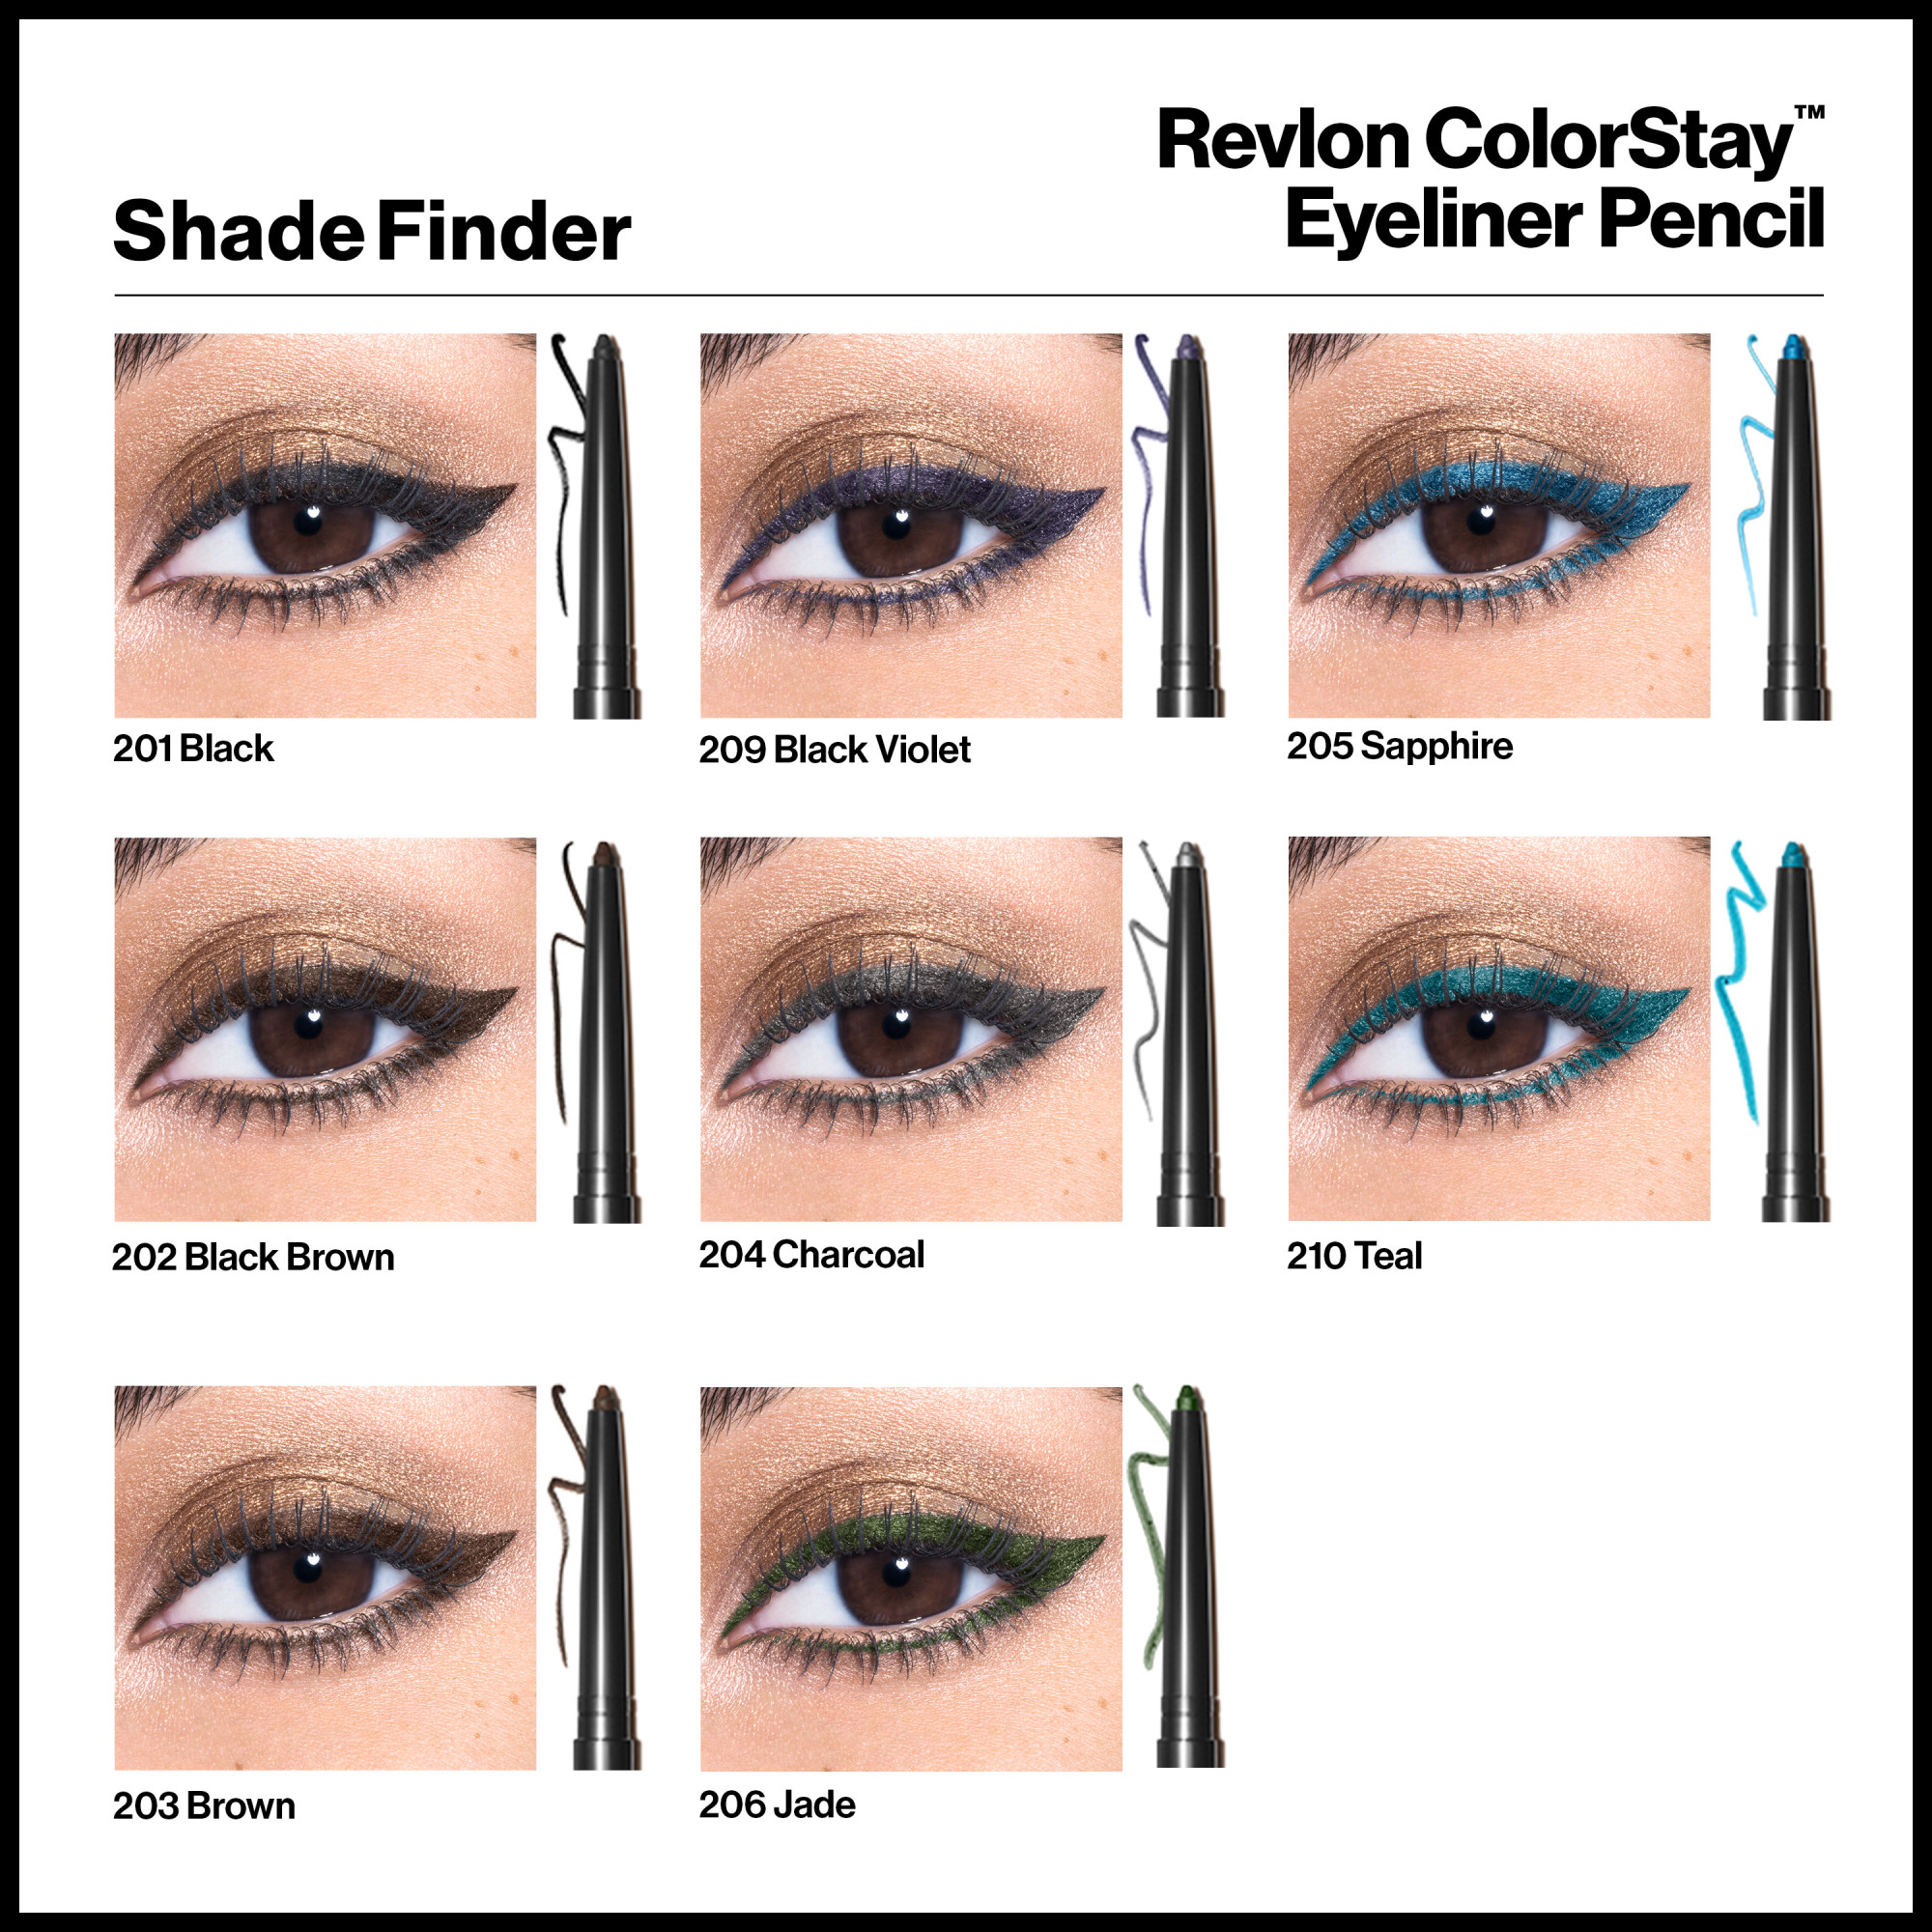 Revlon ColorStay Waterproof Eyeliner Pencil, 24HR Wear, Built-in Sharpener, 201 Black, 0.01 oz - image 8 of 8